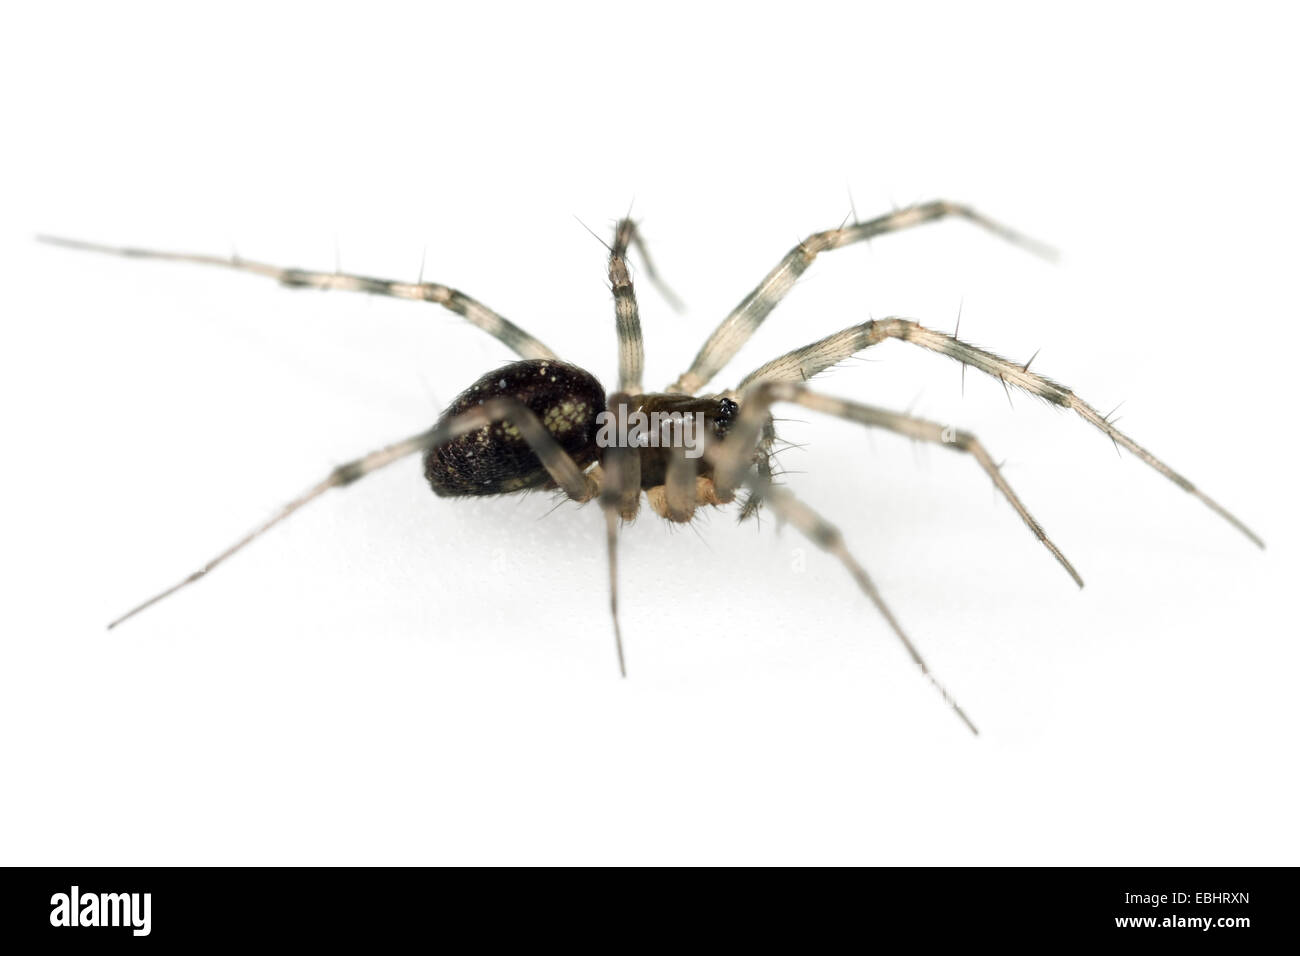 Une femme-Arbre weaver (Lepthyphantes minutus) araignée sur un fond blanc, une partie de la famille des Amphinectidae - Sheetweb weavers. Banque D'Images